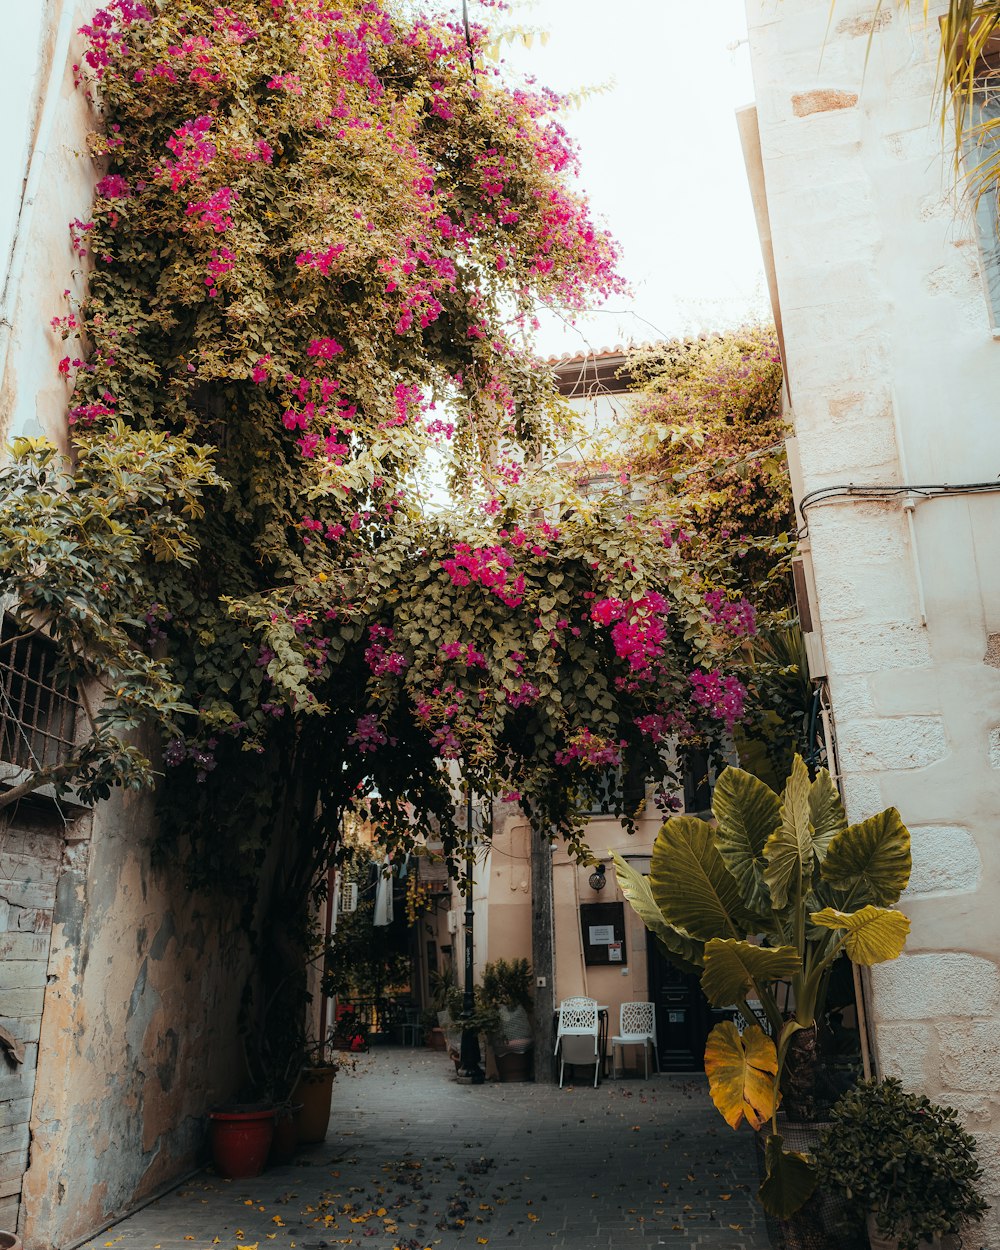 Un callejón estrecho con flores rosadas en los árboles